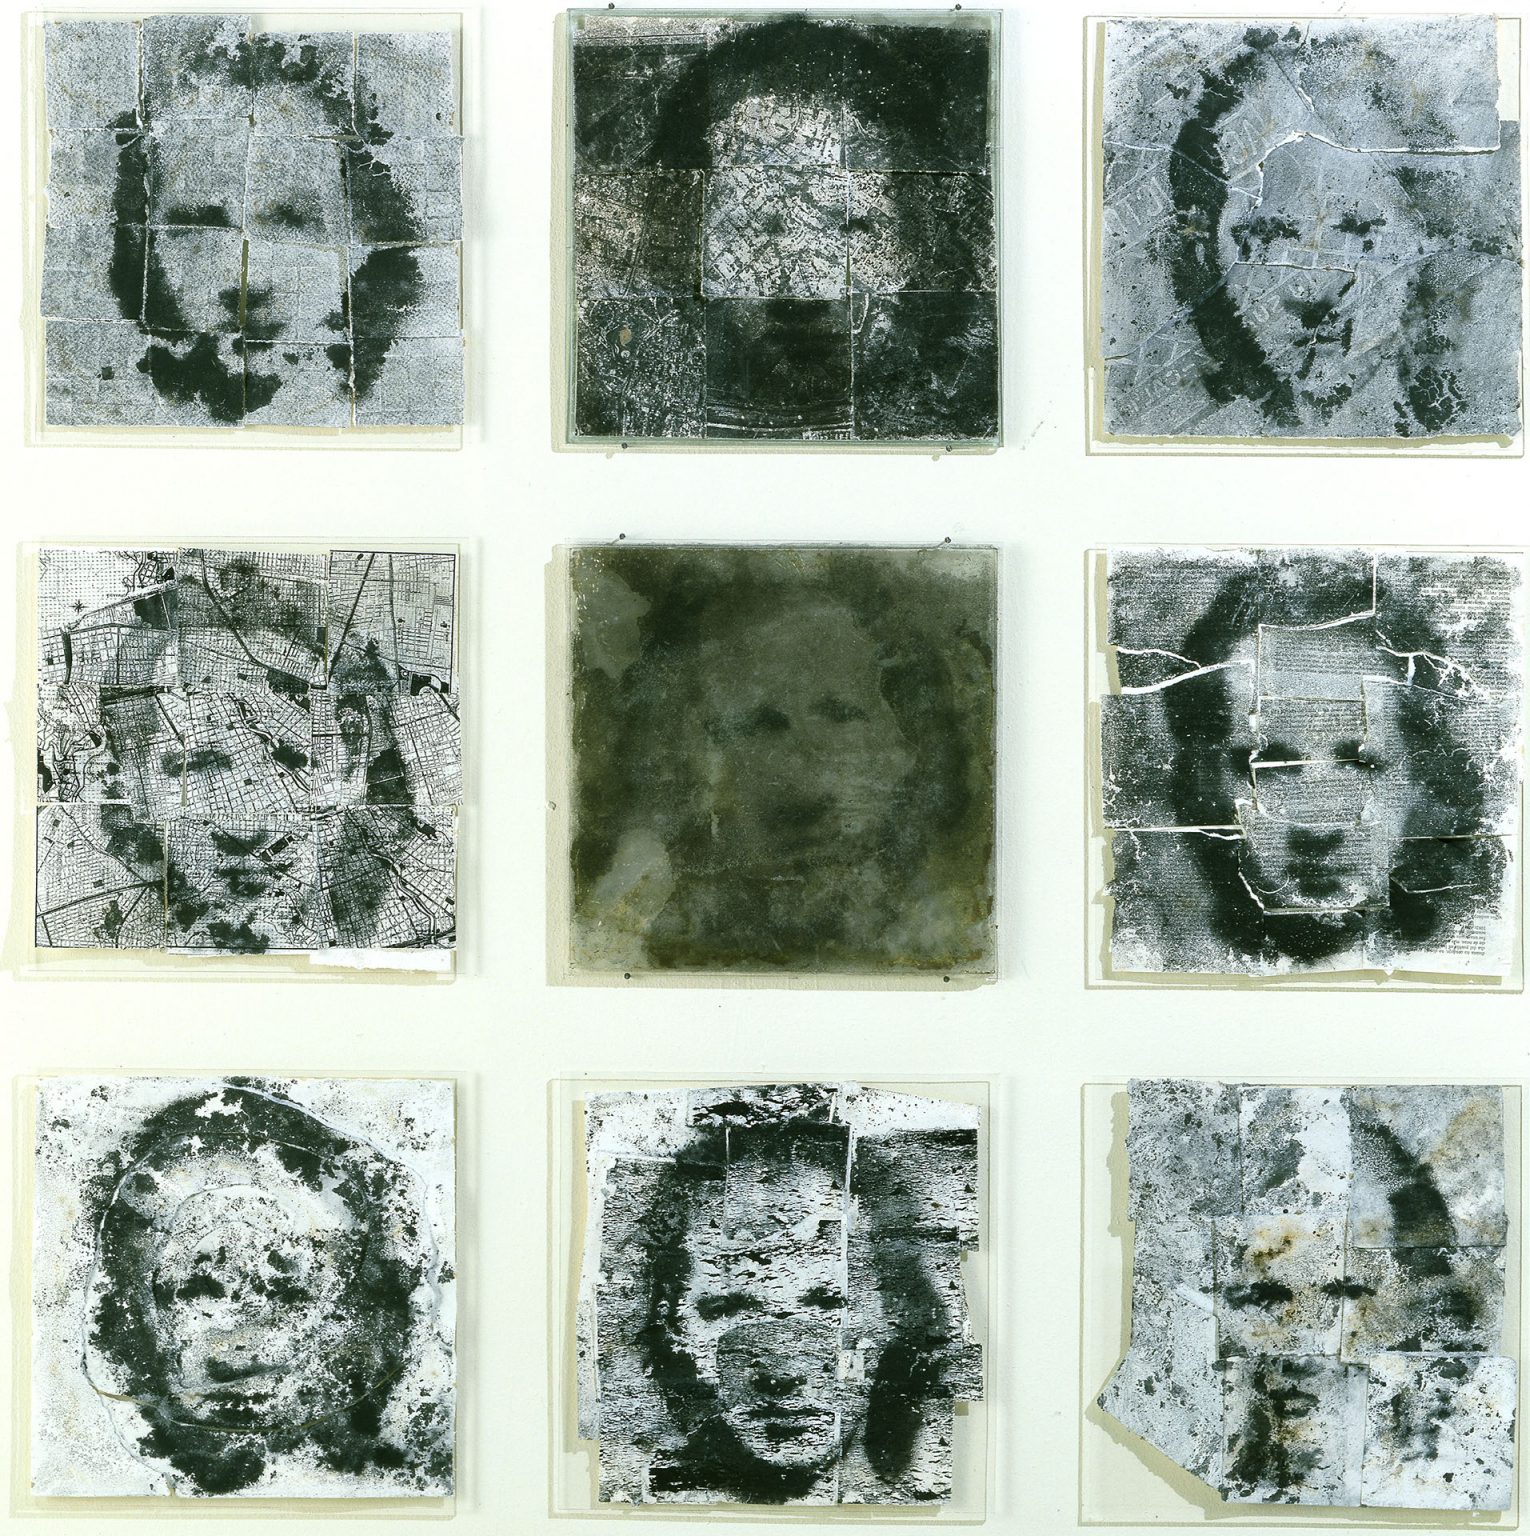 Seis retratos cuadrados de la cara de una misma persona en diferentes tonos de blanco y negro y diferentes niveles de nitidez.